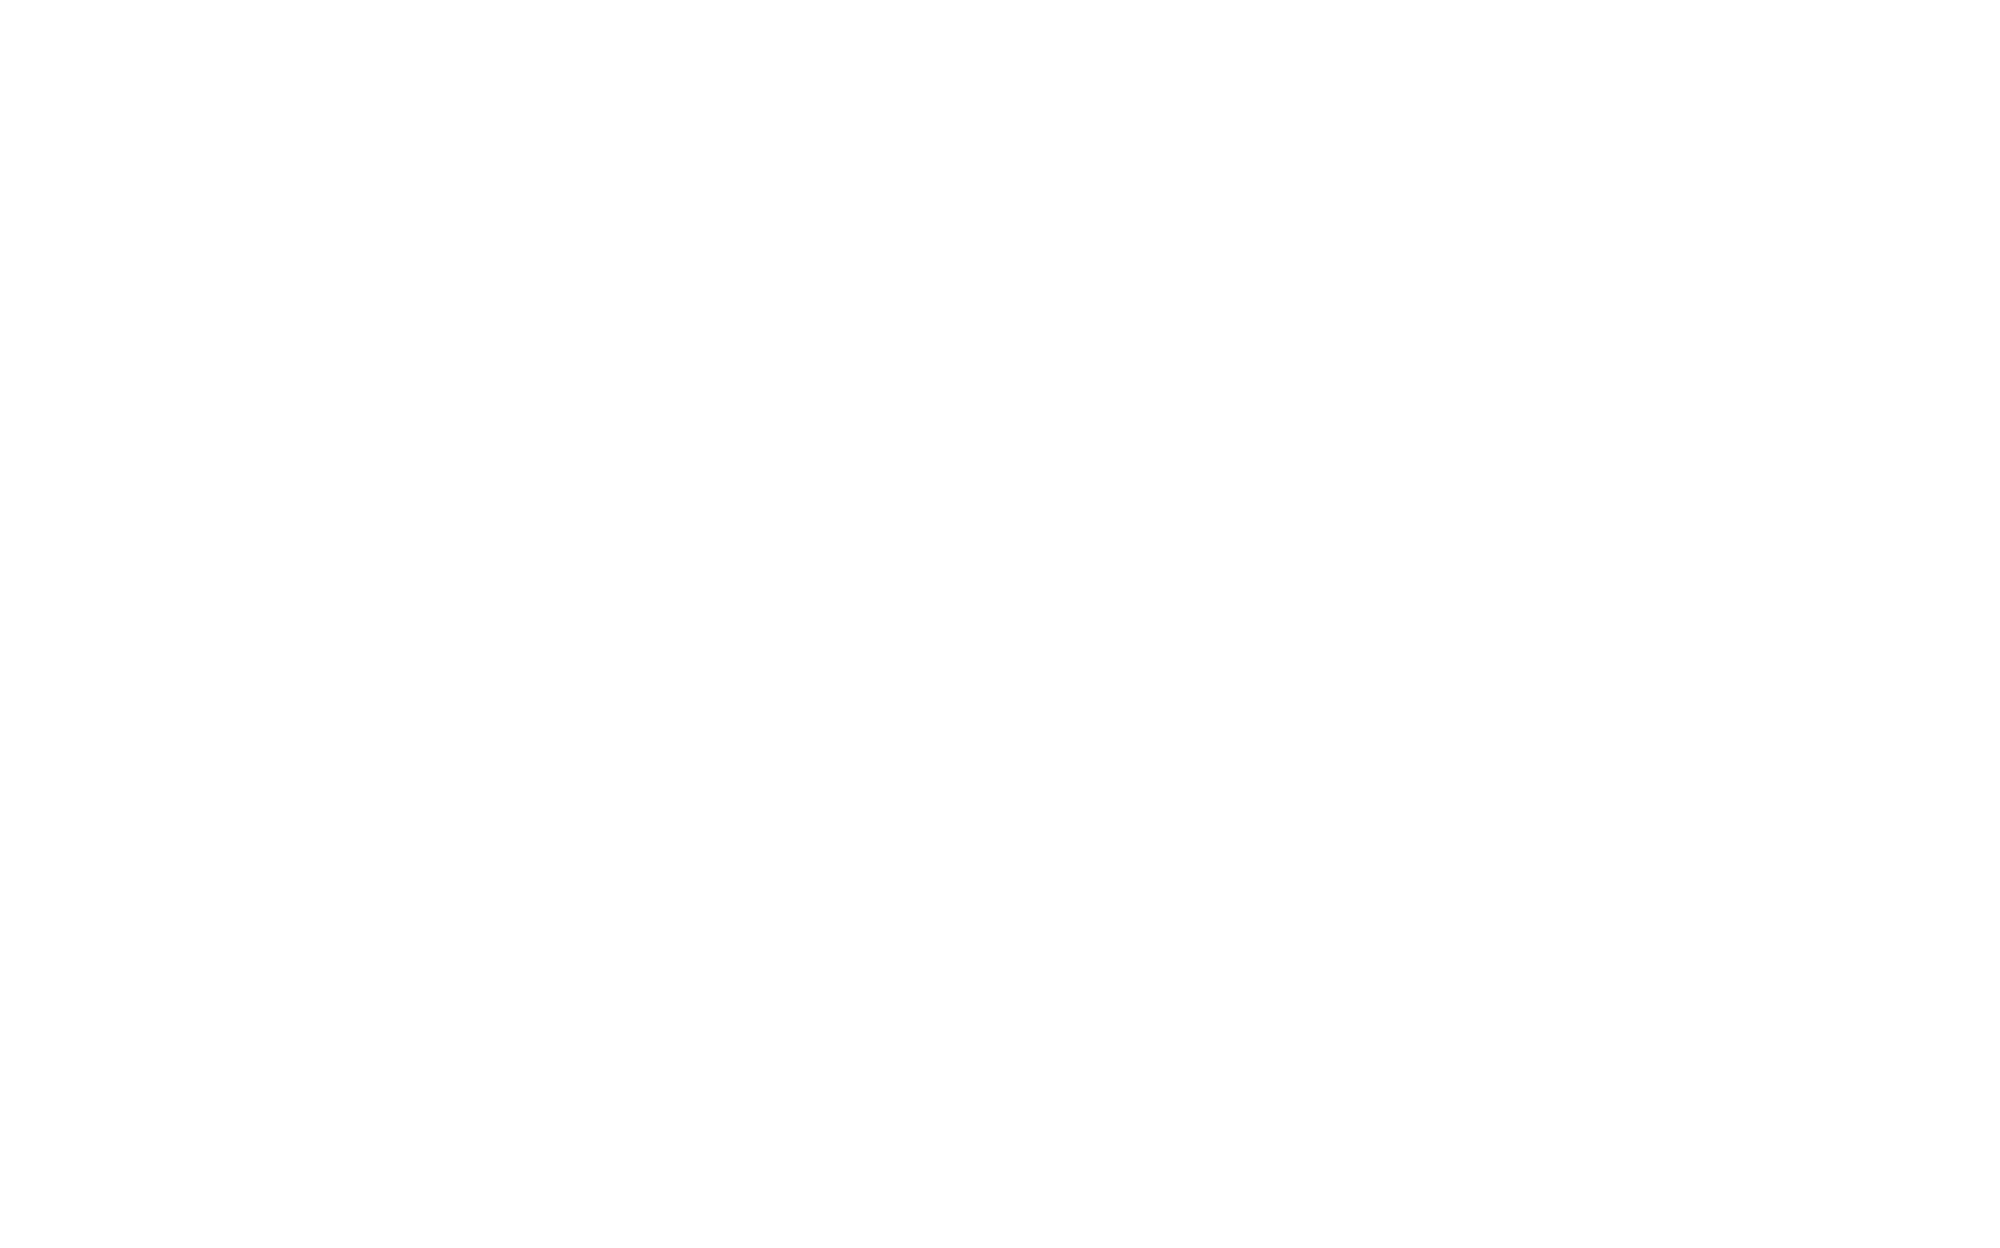 Park Plaza County Hall